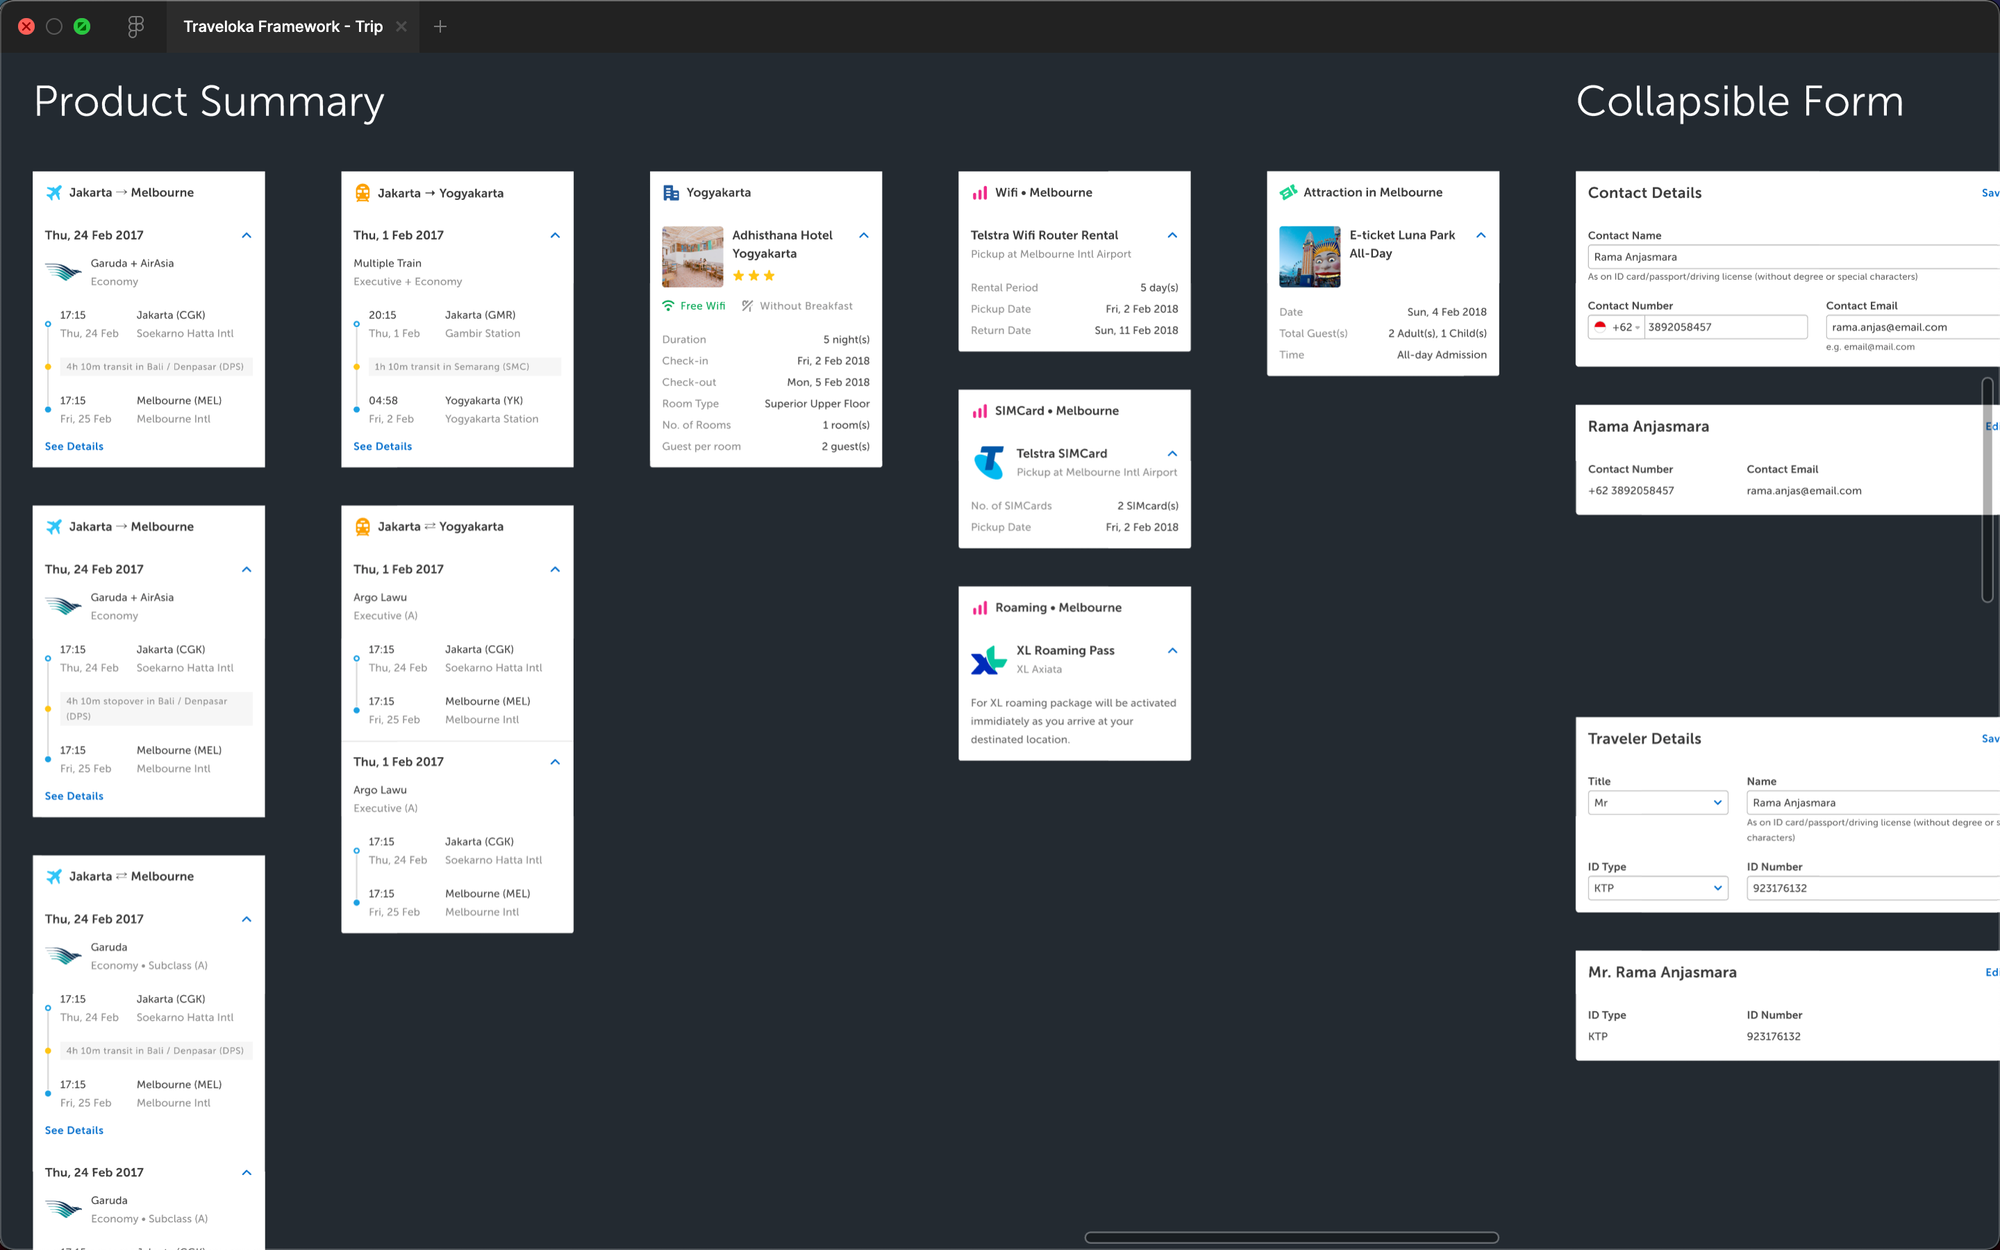 Screenshot of Booking Page UI Kit for desktop platform